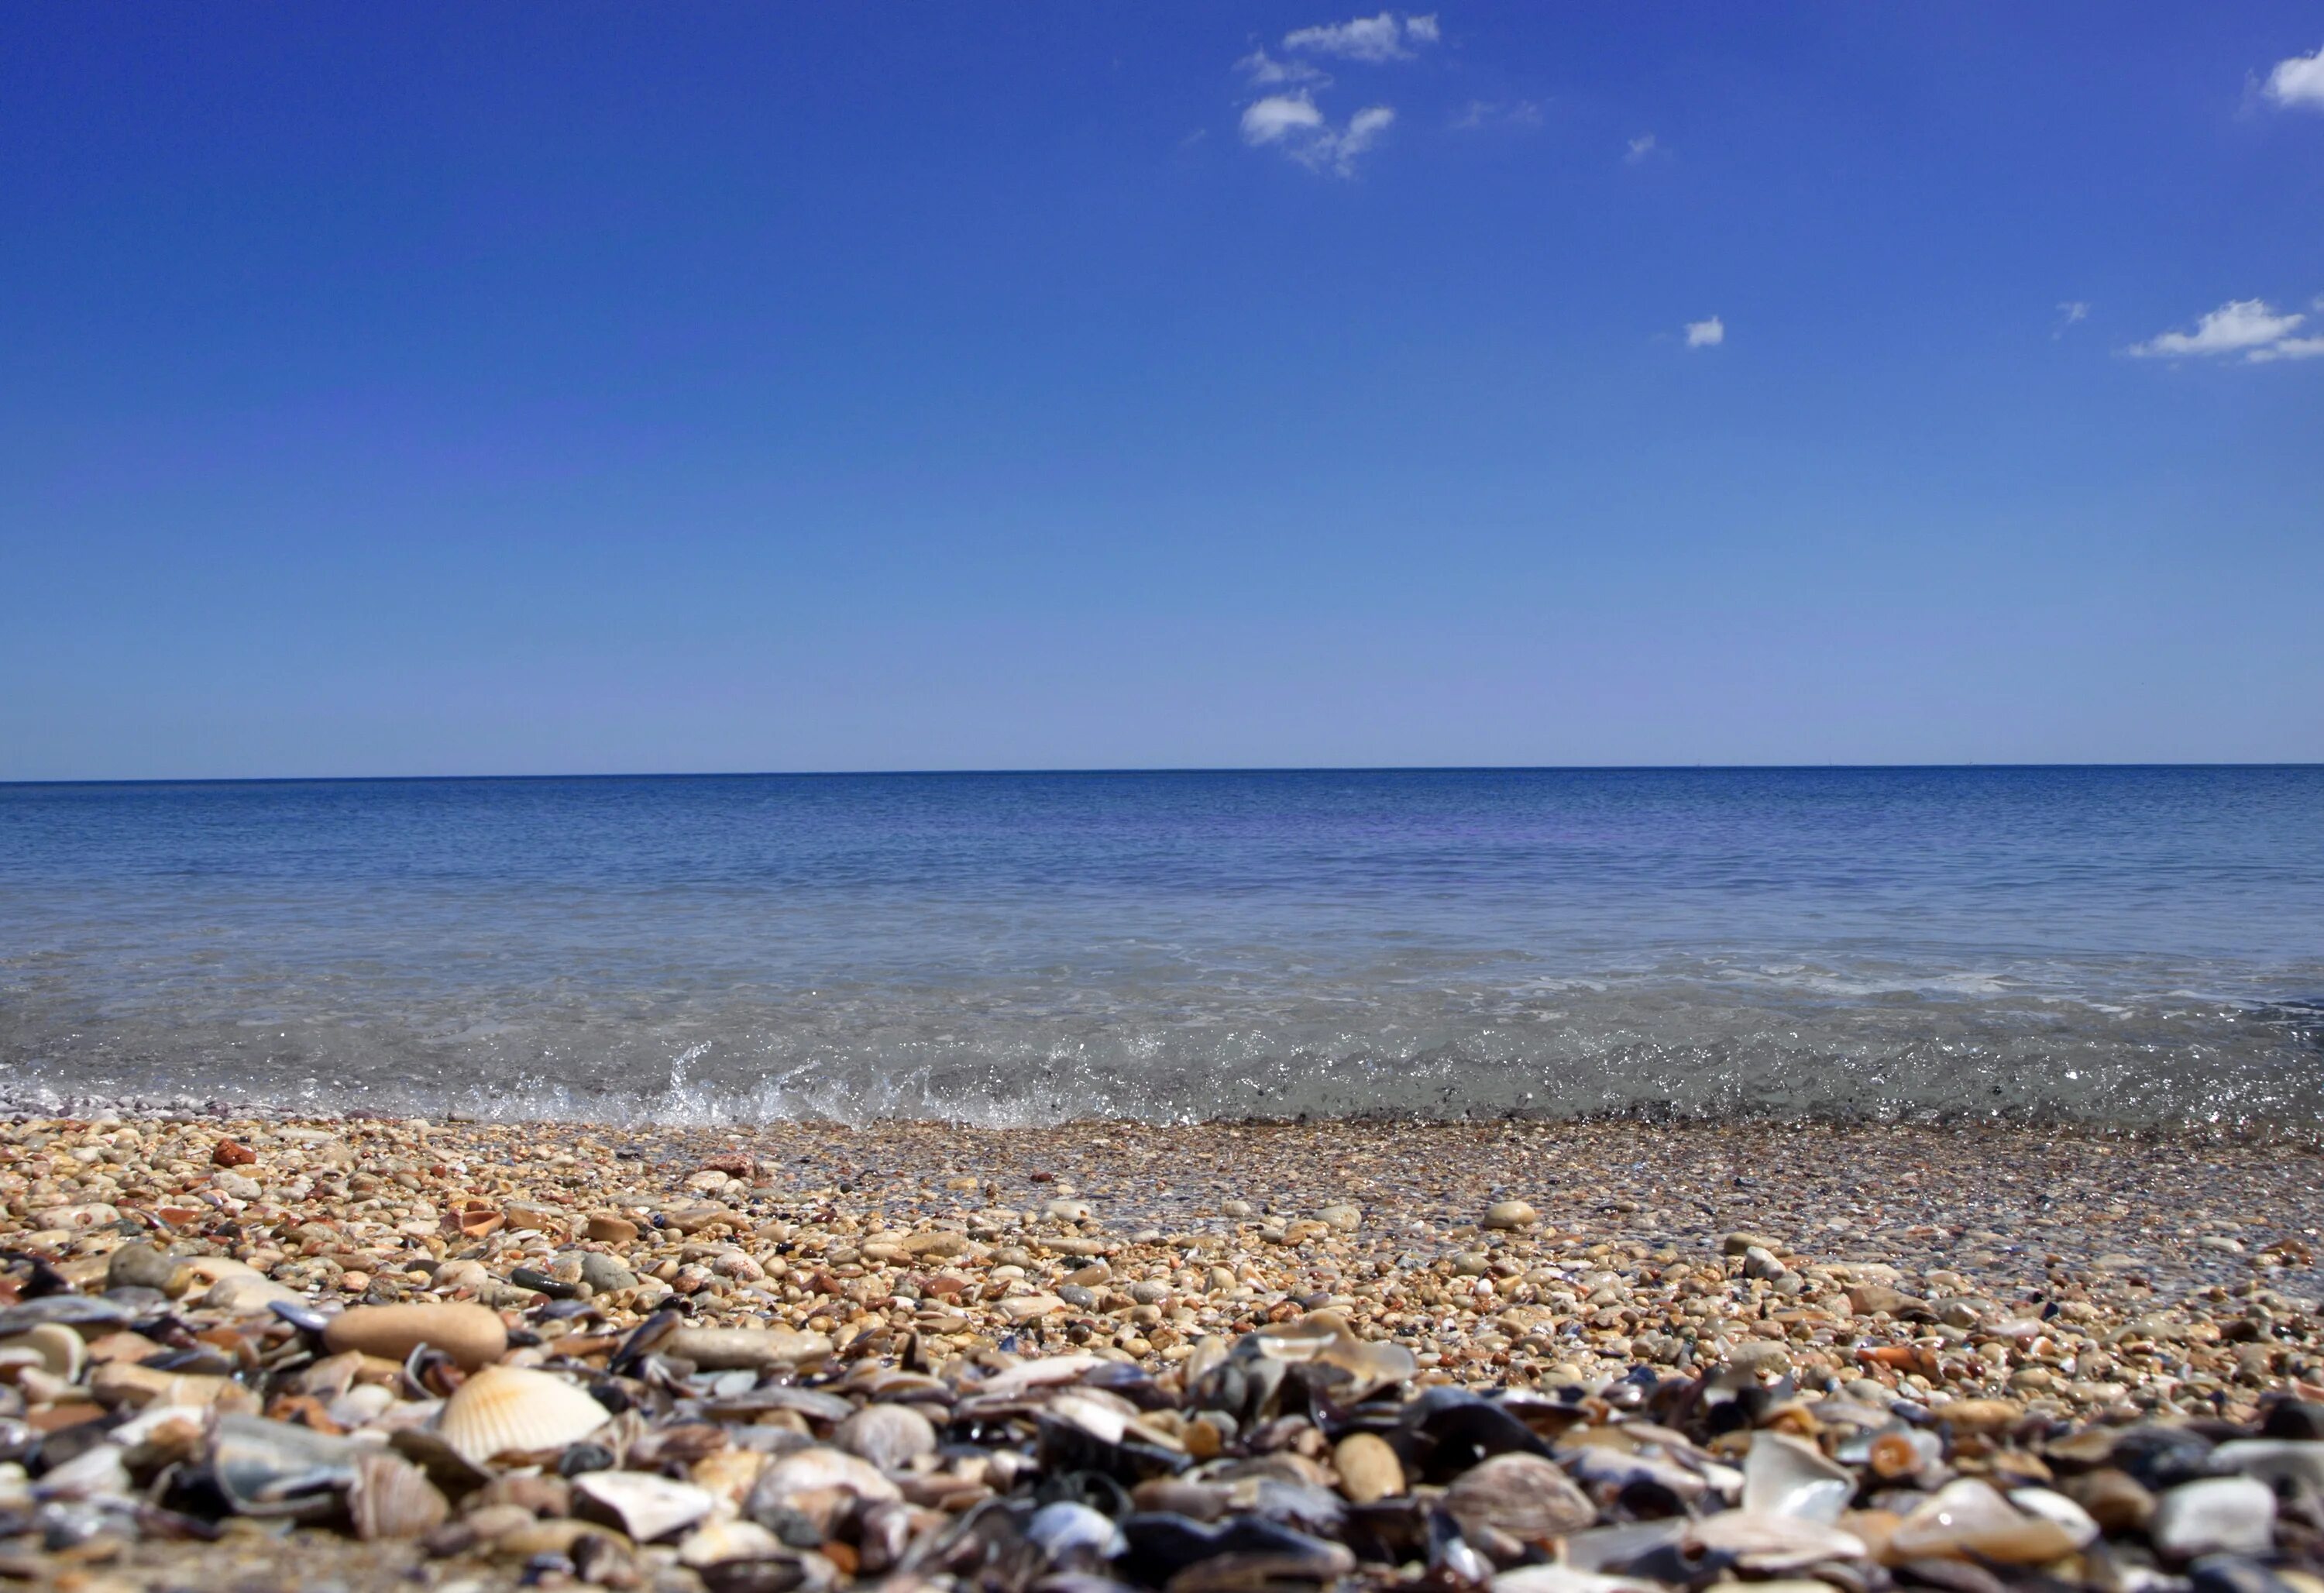 Круг черного моря. Галечный пляж Лазаревское. Черное море галечный пляж. Витязево галечный пляж. Черное море галечный берег.